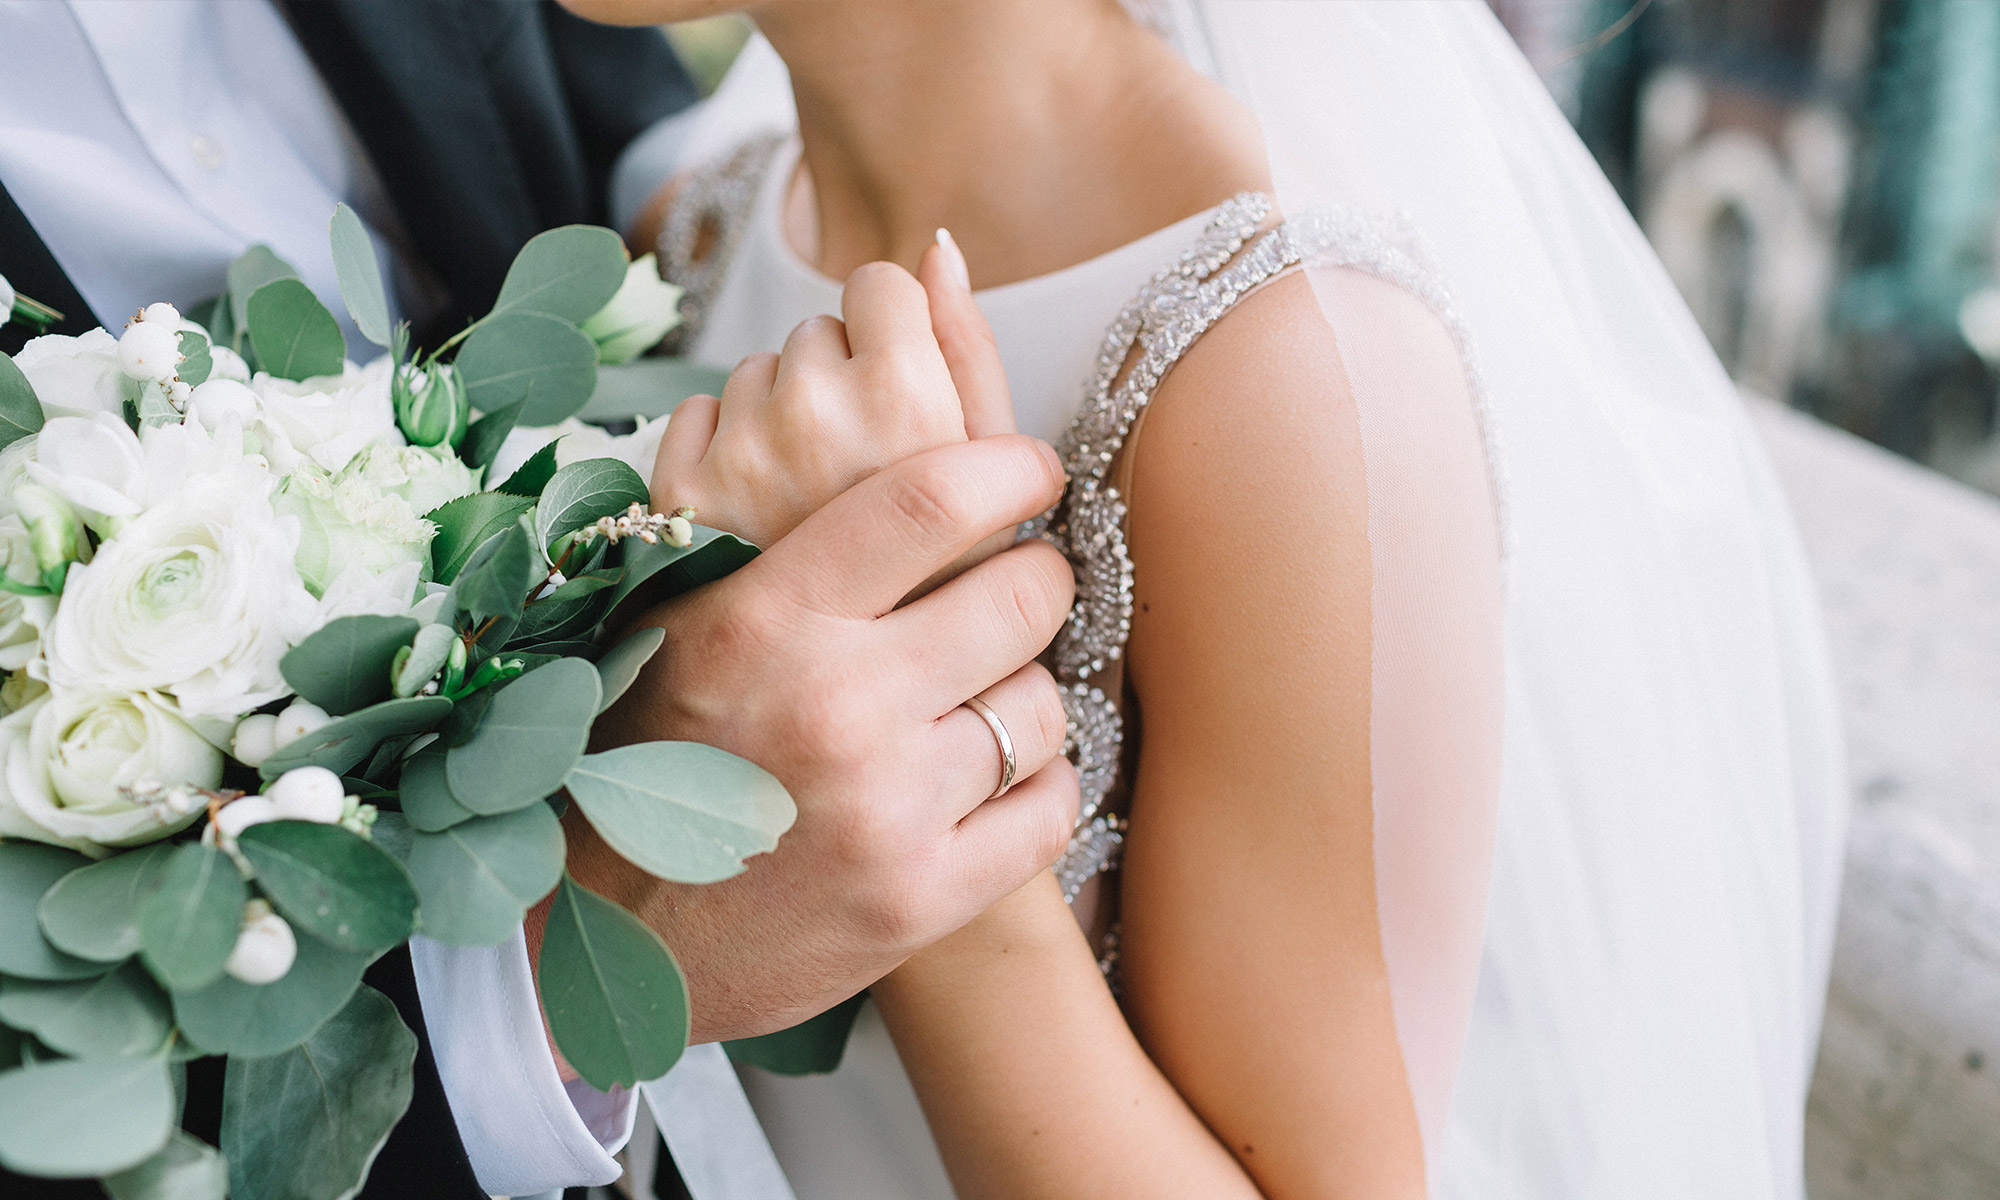 “I Do” Good: Charitable Ideas for Your Wedding